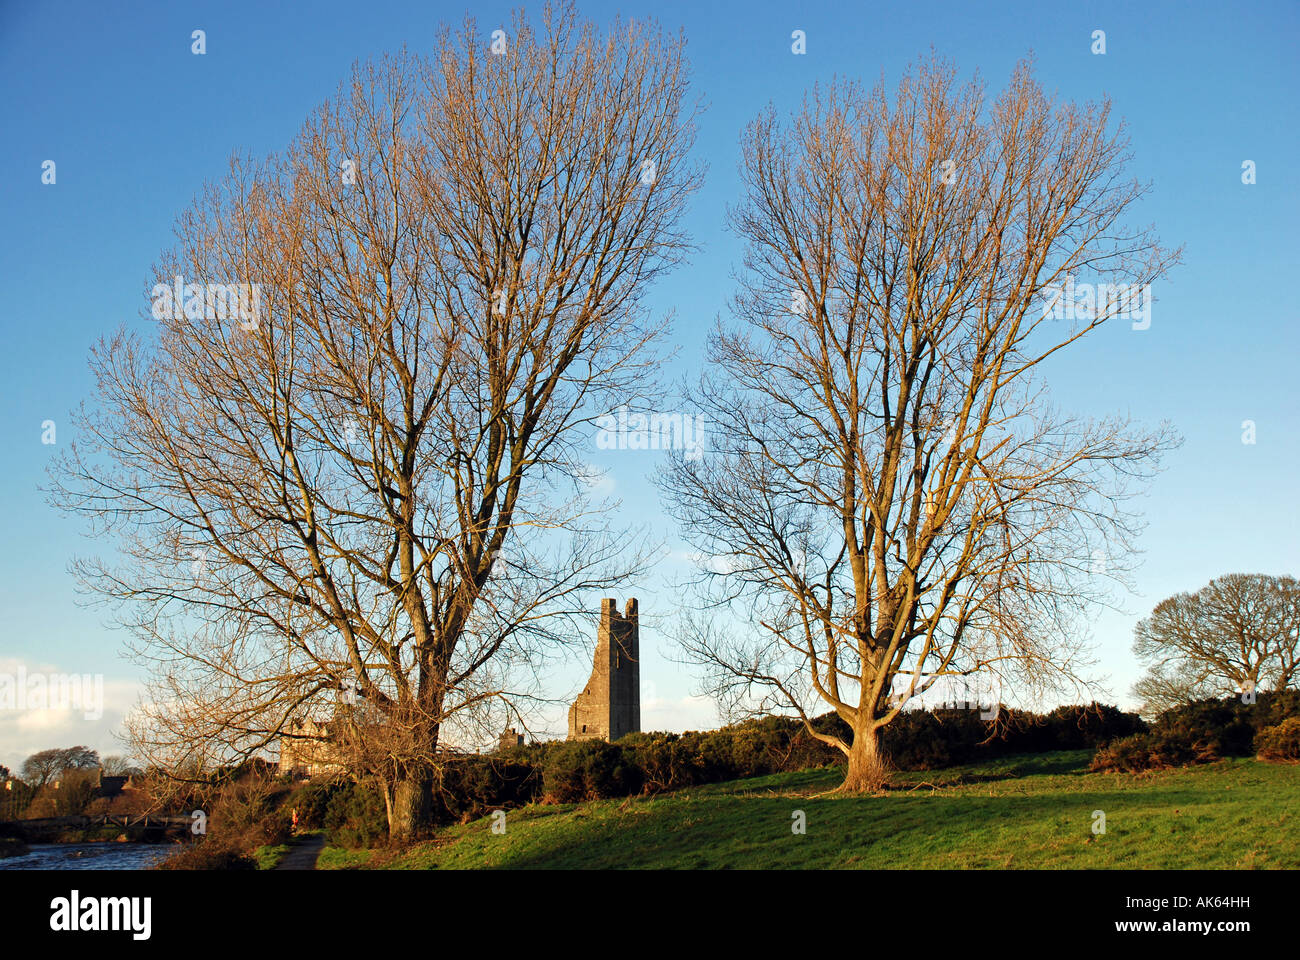 Le clocher de St Mary's Abbey (connu sous le nom de 'Yellow Steeple'),Trim, Co Meath, Irlande. Banque D'Images